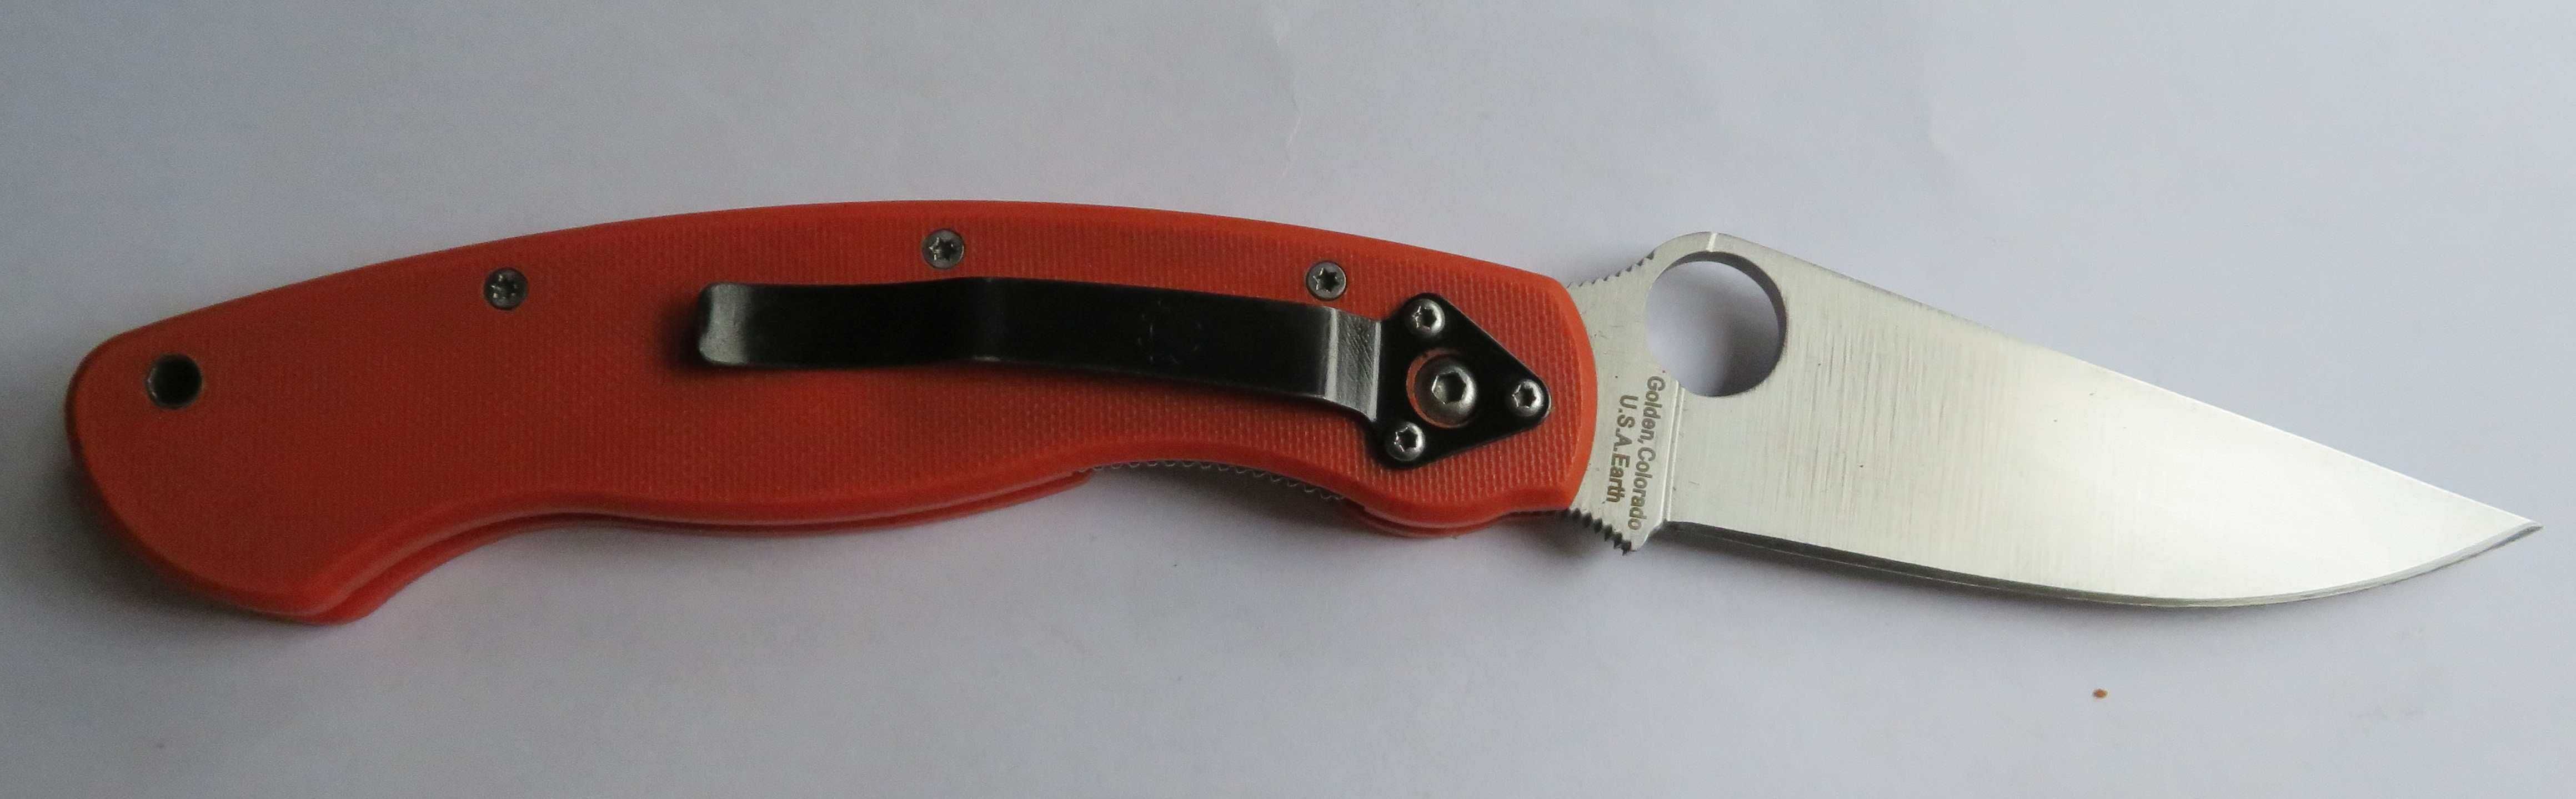 nóż składany Spyderco Military pomarańczowy